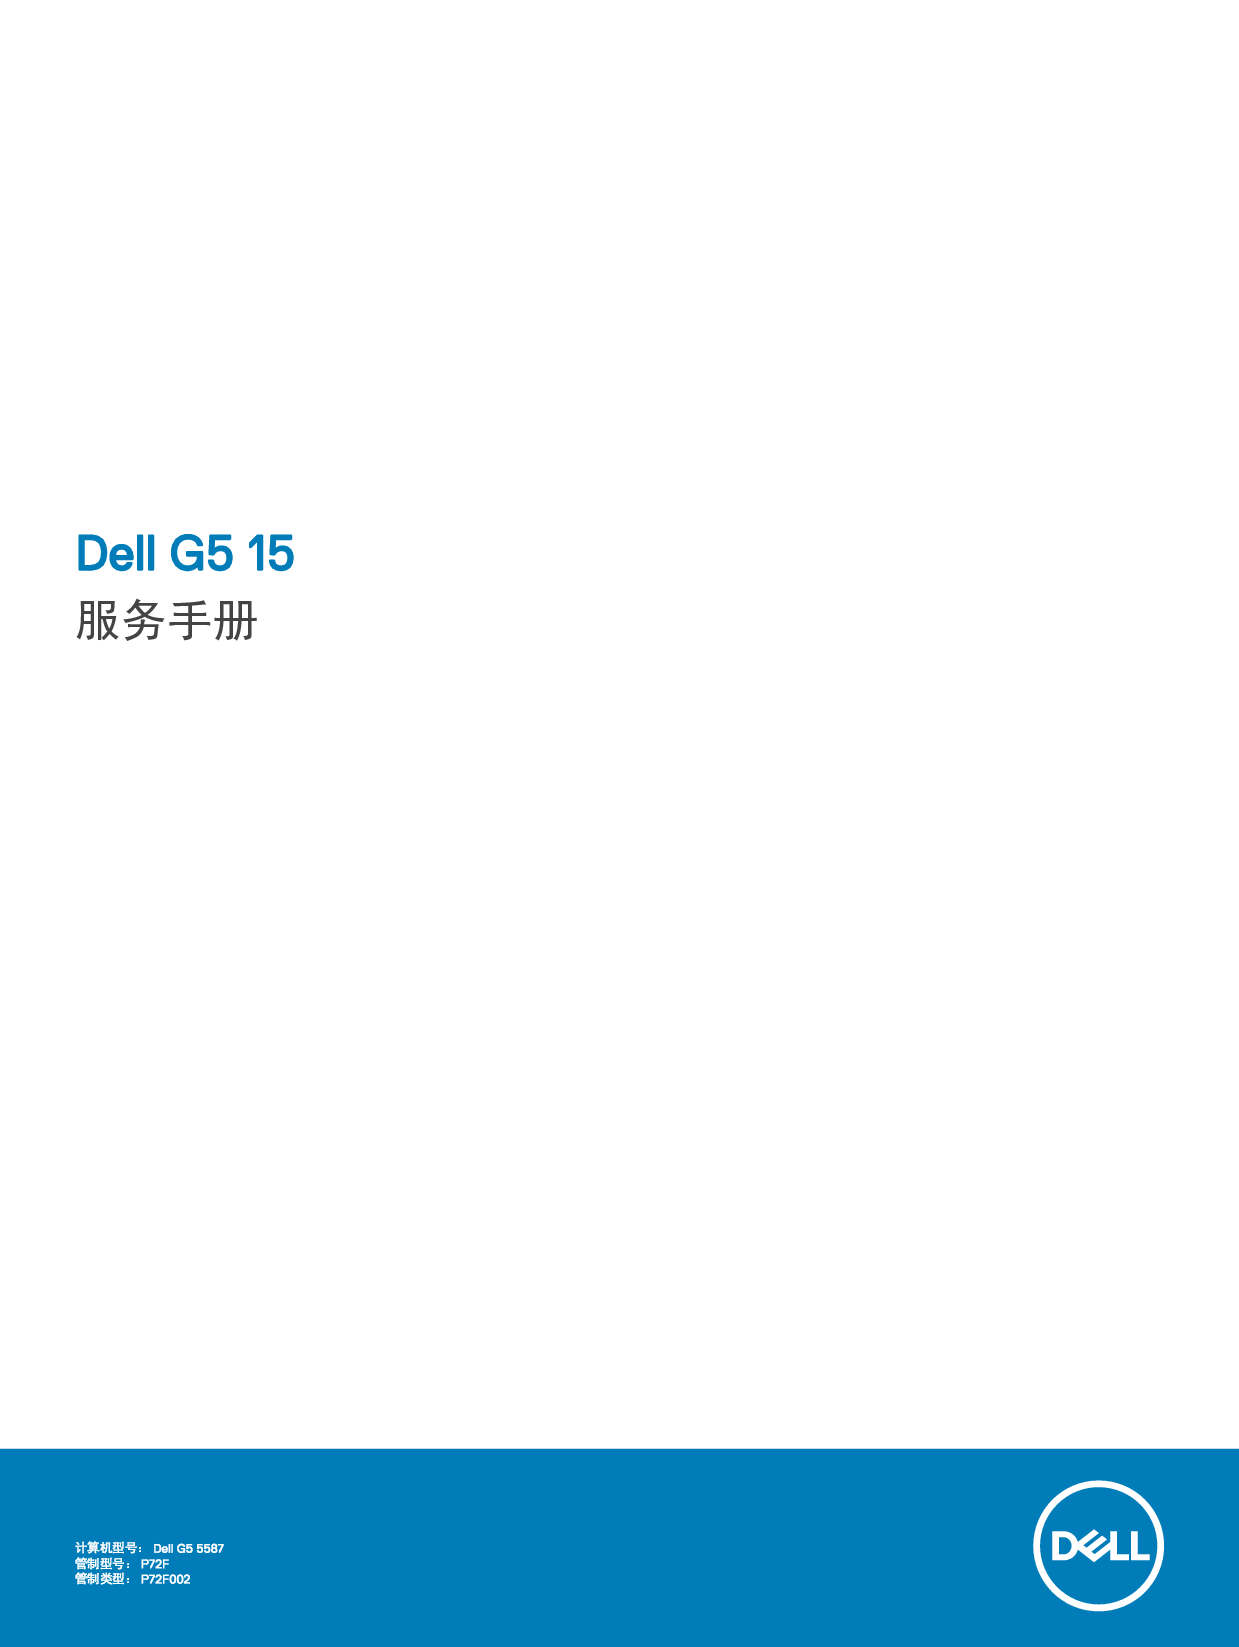 戴尔 Dell G5 15 5587 维修服务手册 封面